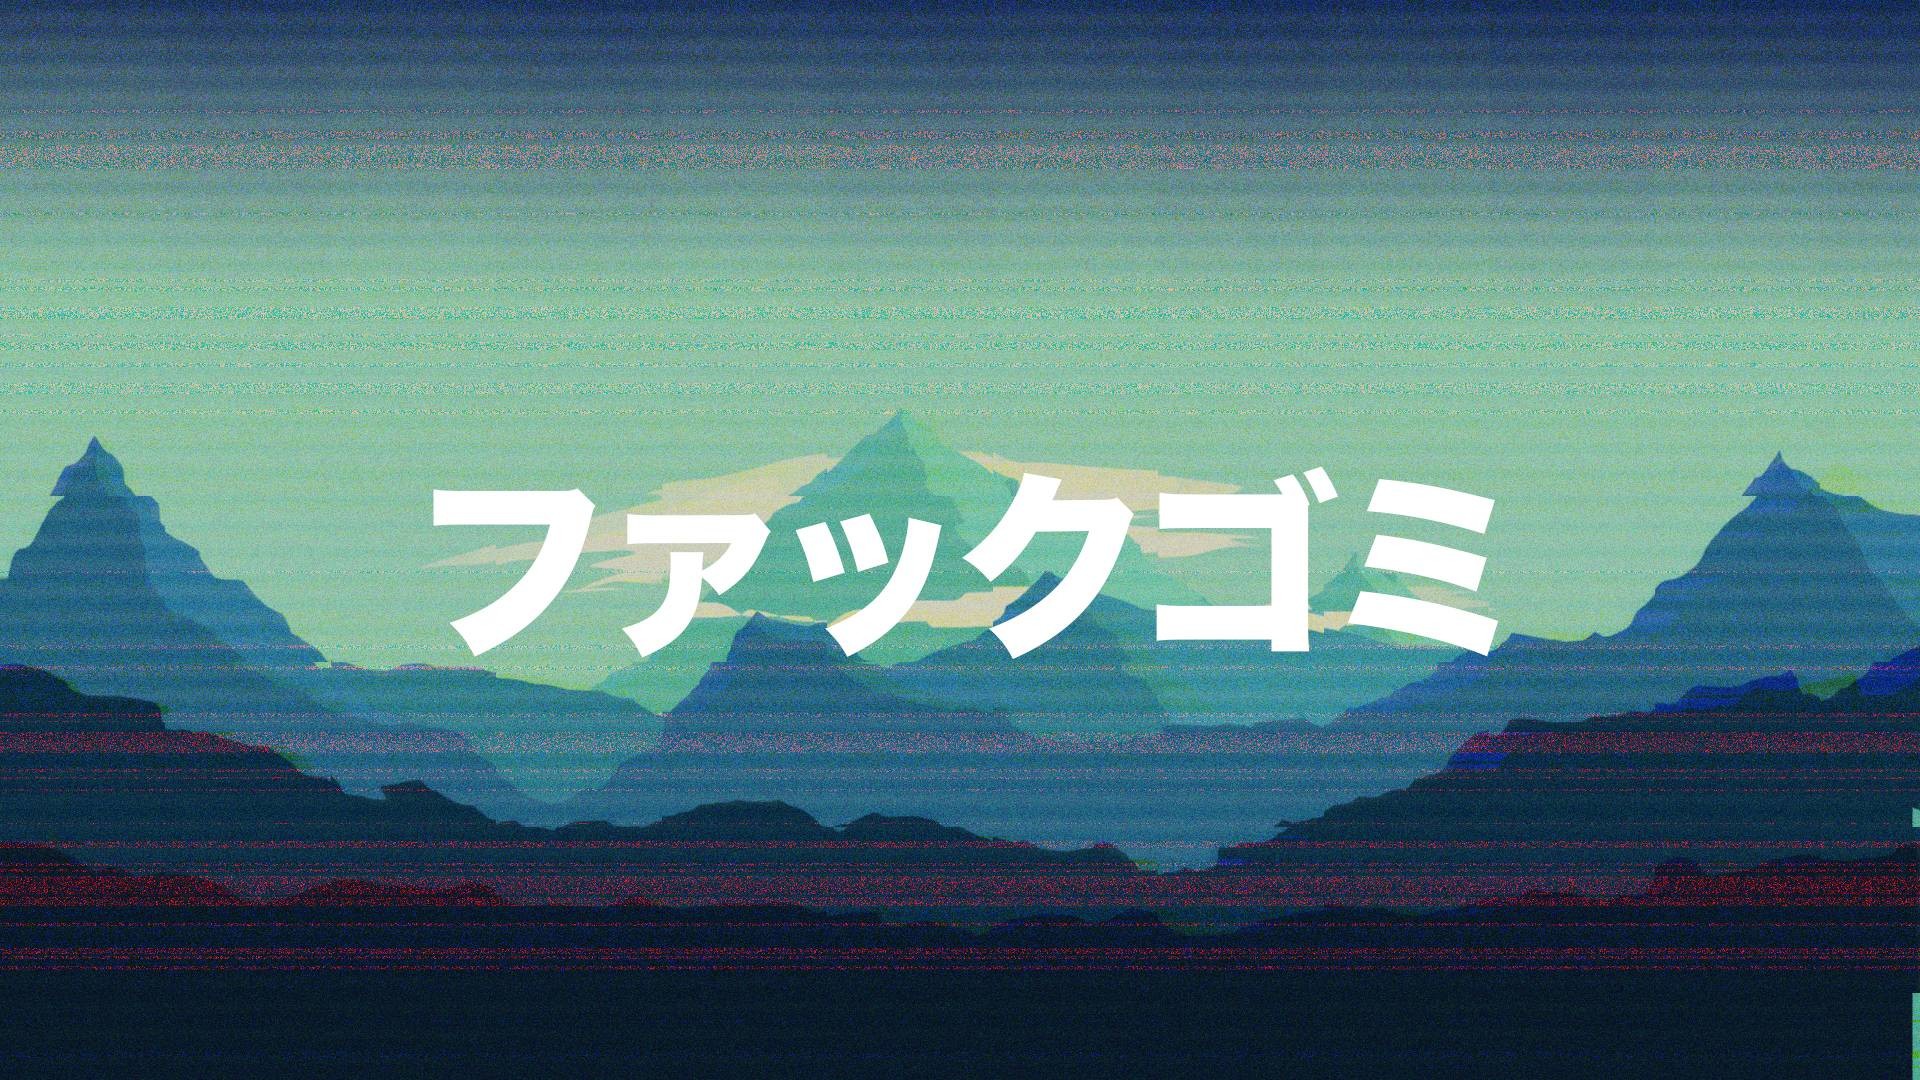 1920x1080 Glitch mountains with Kanji []